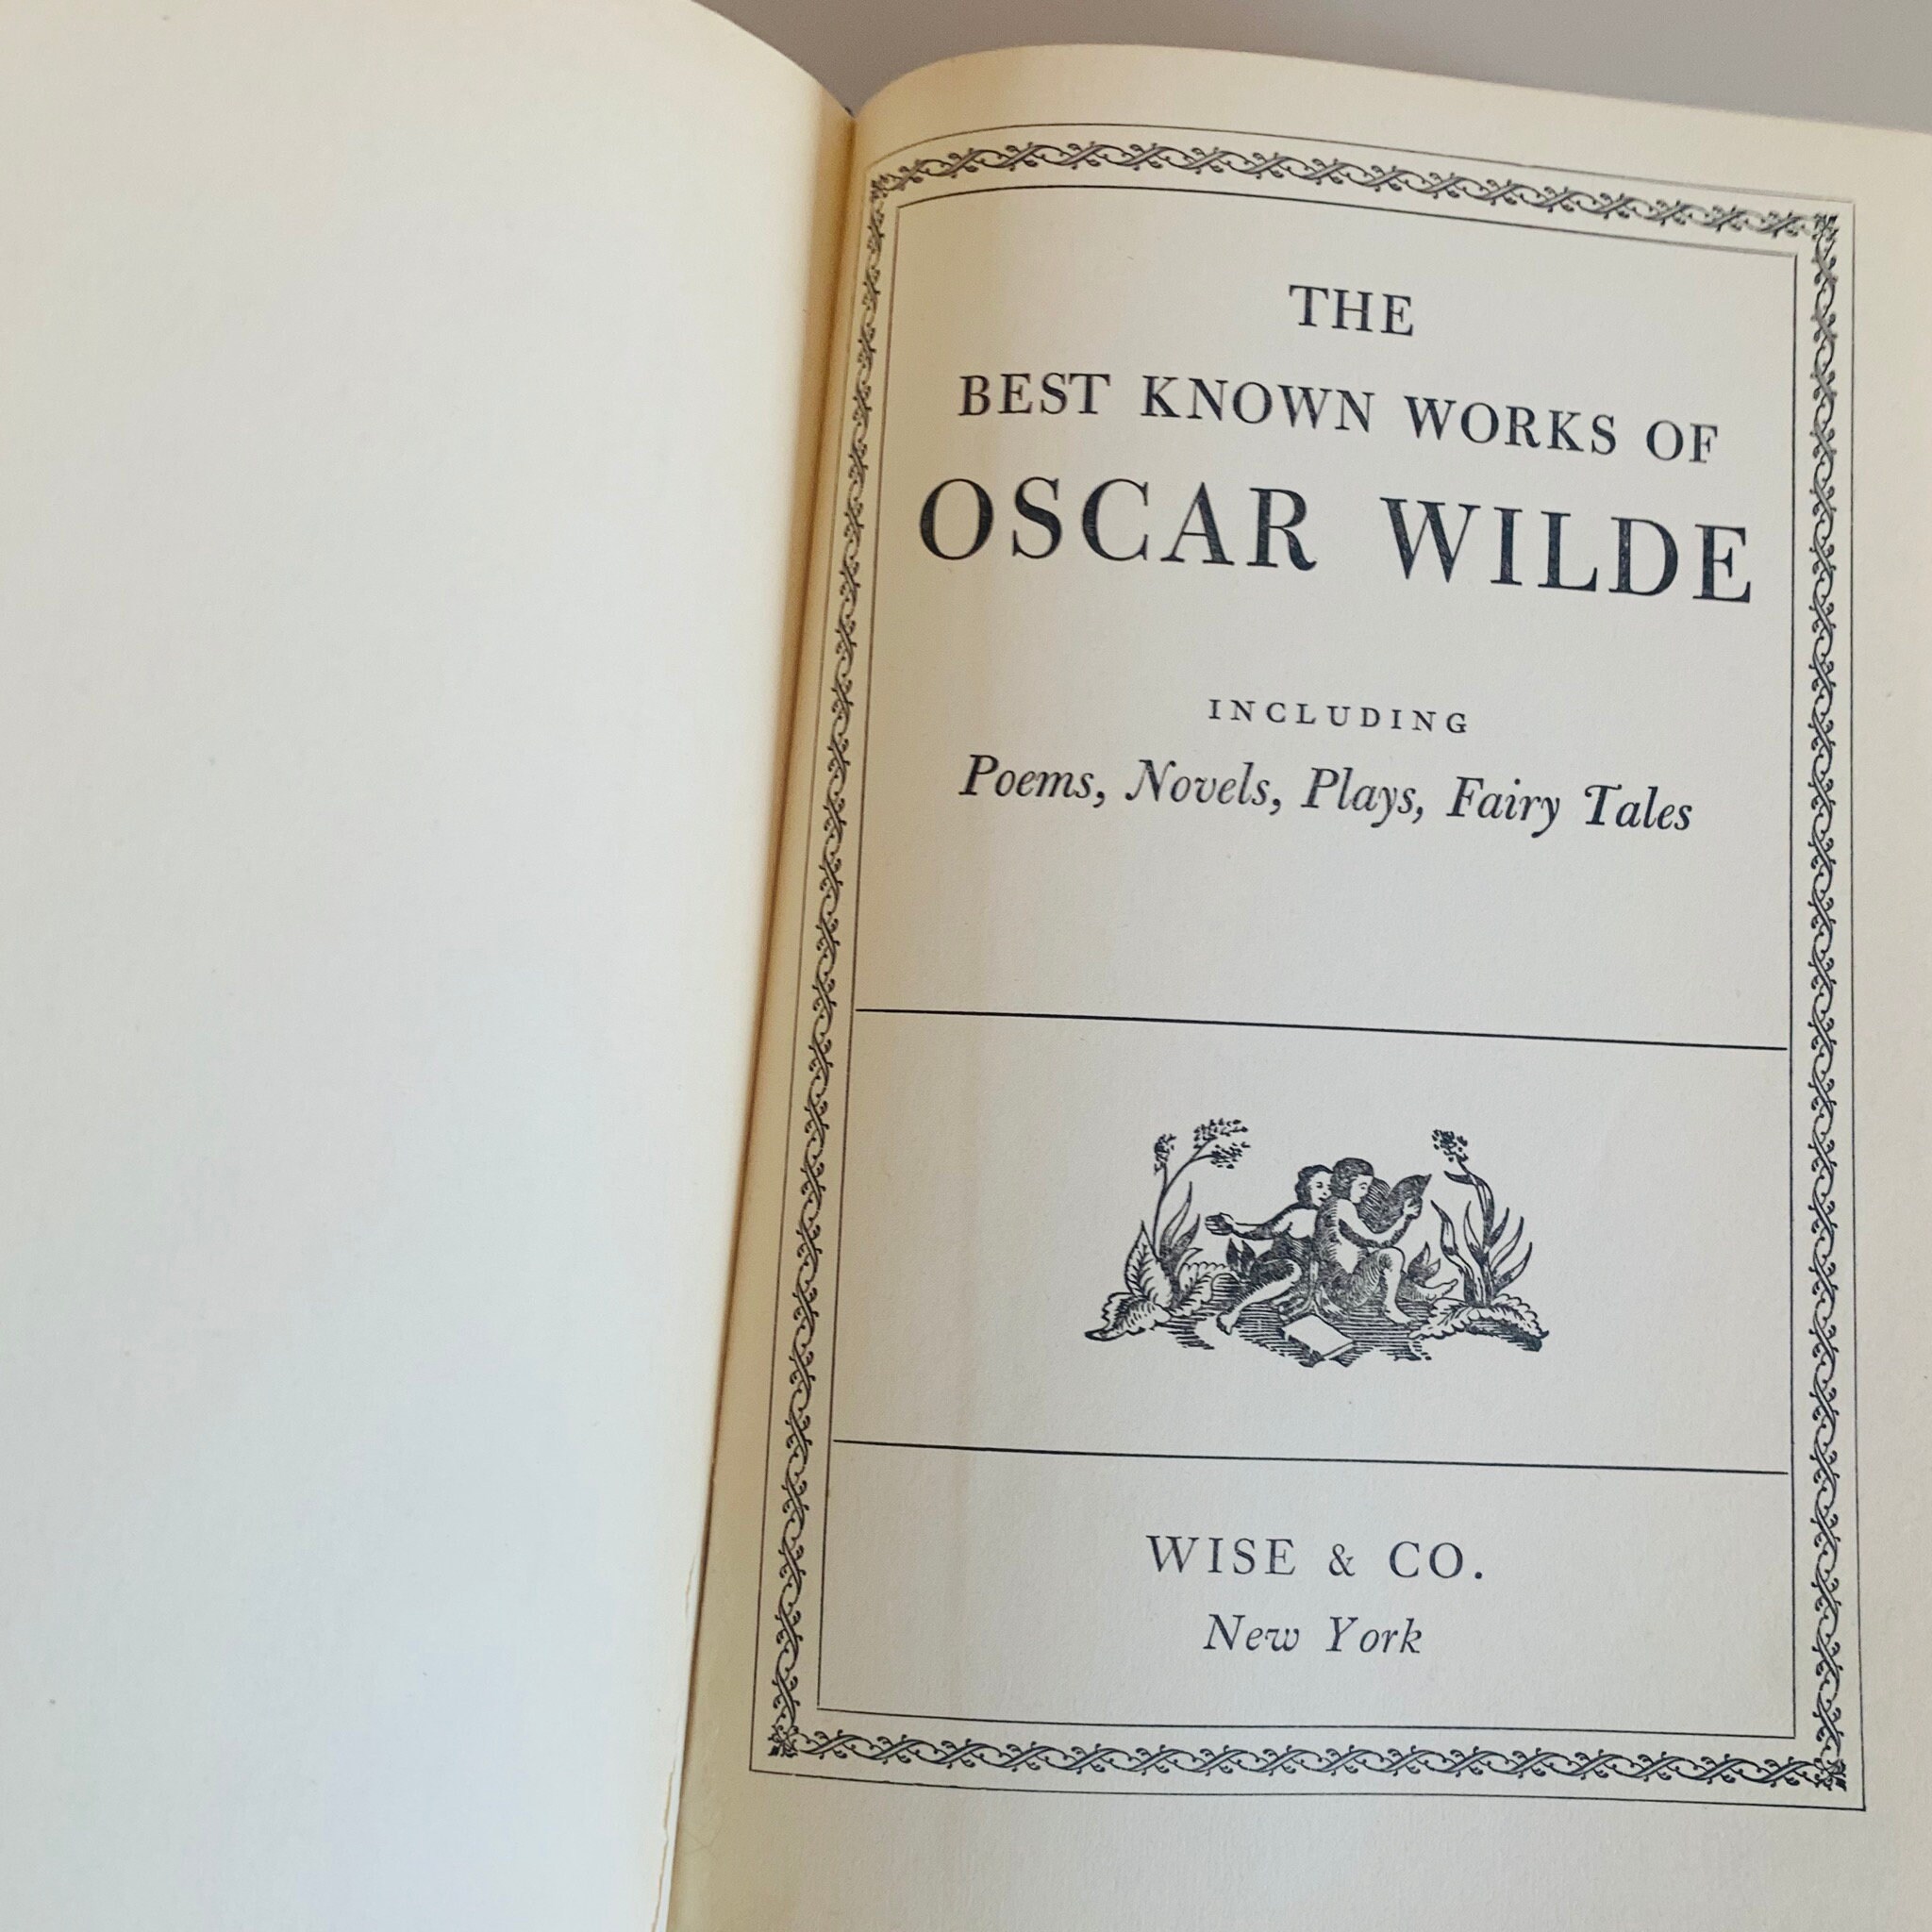 Oscar wilde biografia obras y oraciones